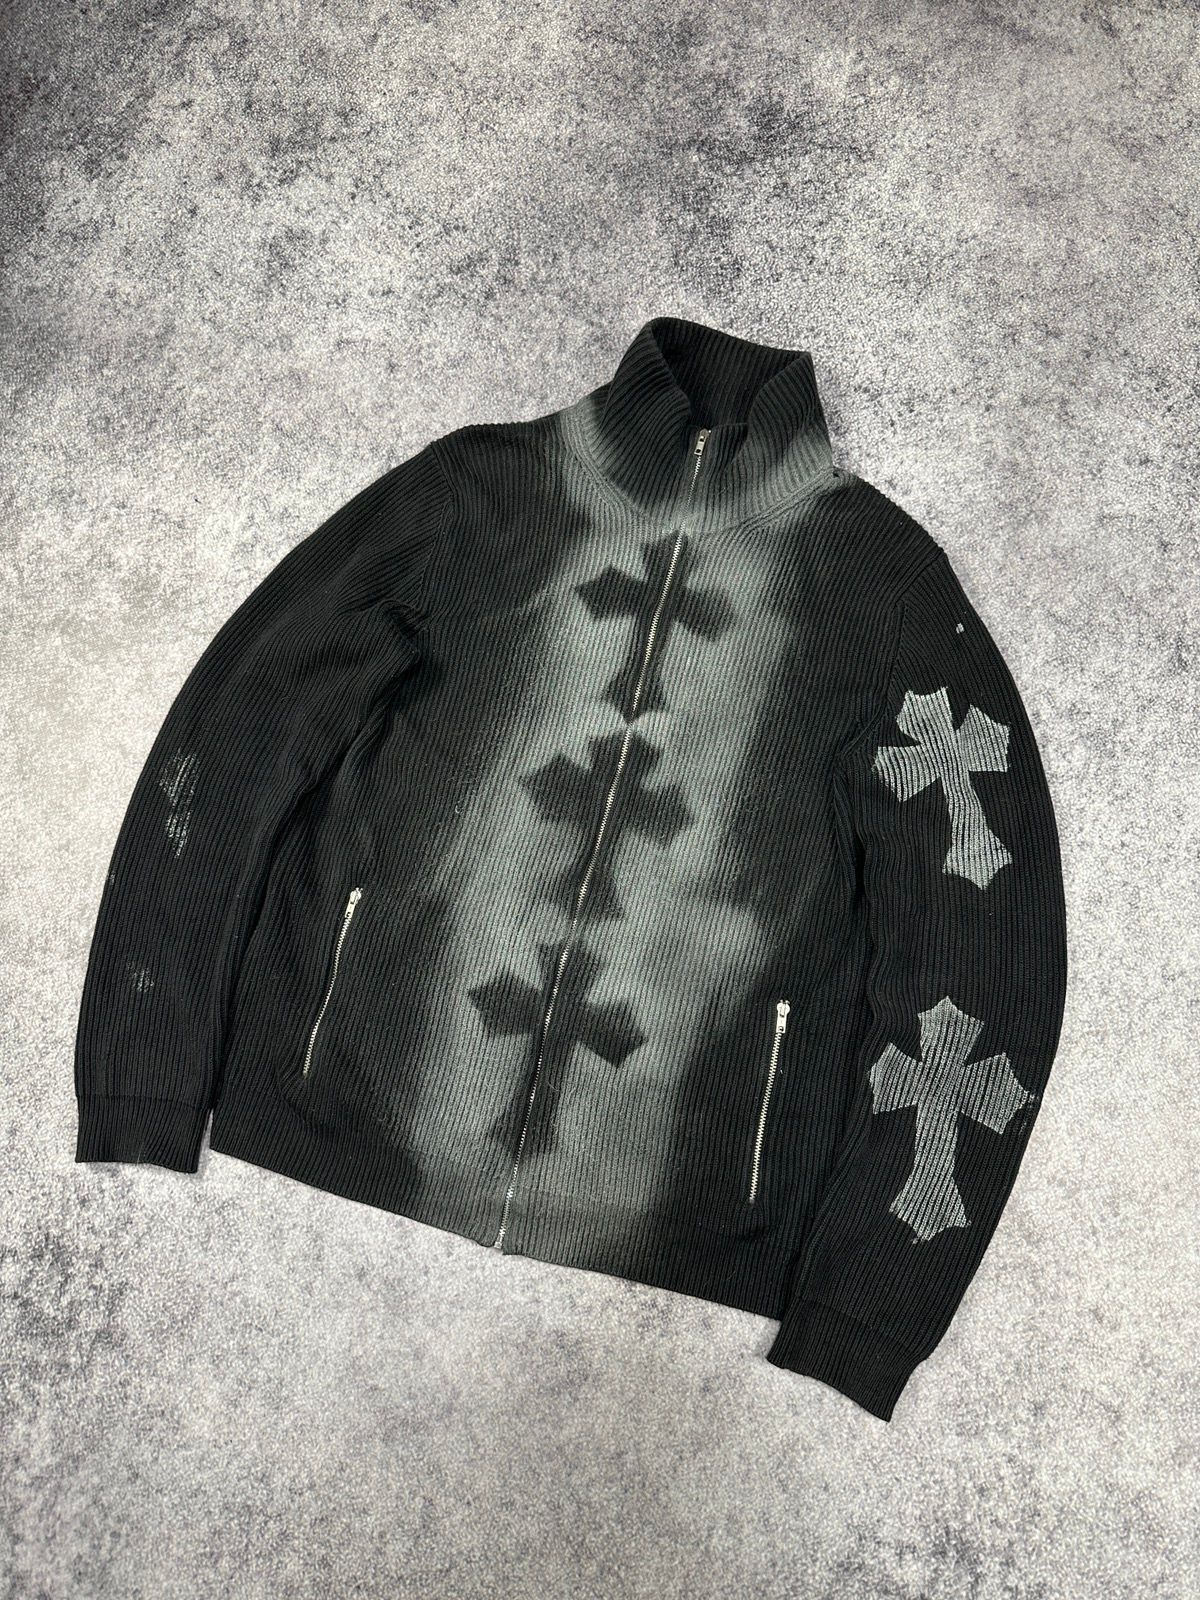 Pre-owned Archival Clothing X Avant Garde Custom Gap Sweater Zip Up Avant Garde Style Crosses Opium L In Dark Gray